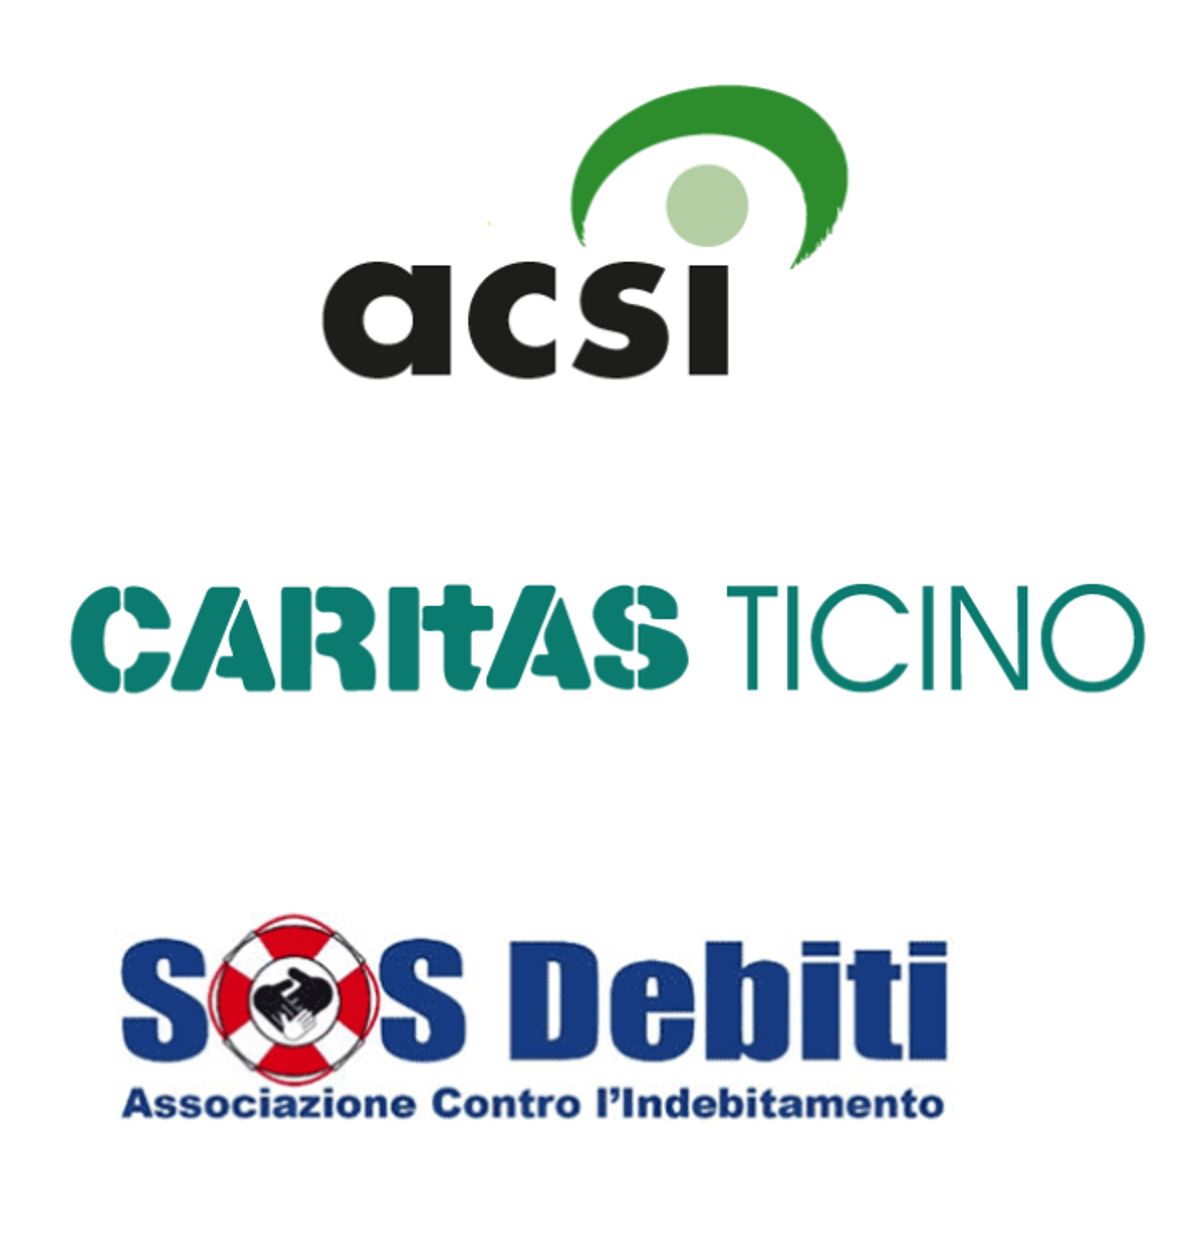 Logos acsi Caritas Ticino SOOS Debiti